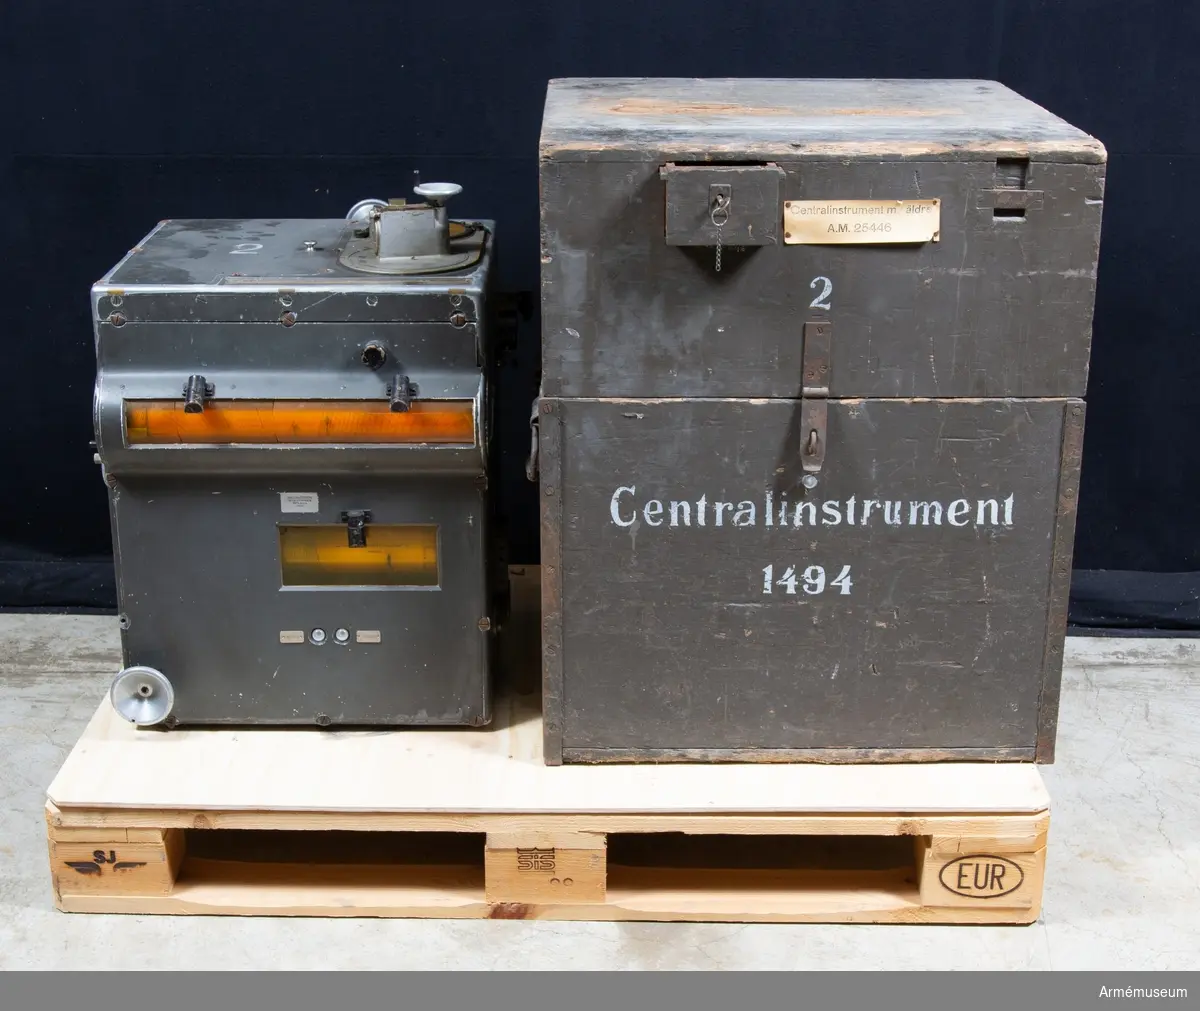 Grupp F III.
Centralinstrument nr 1494, i låda.